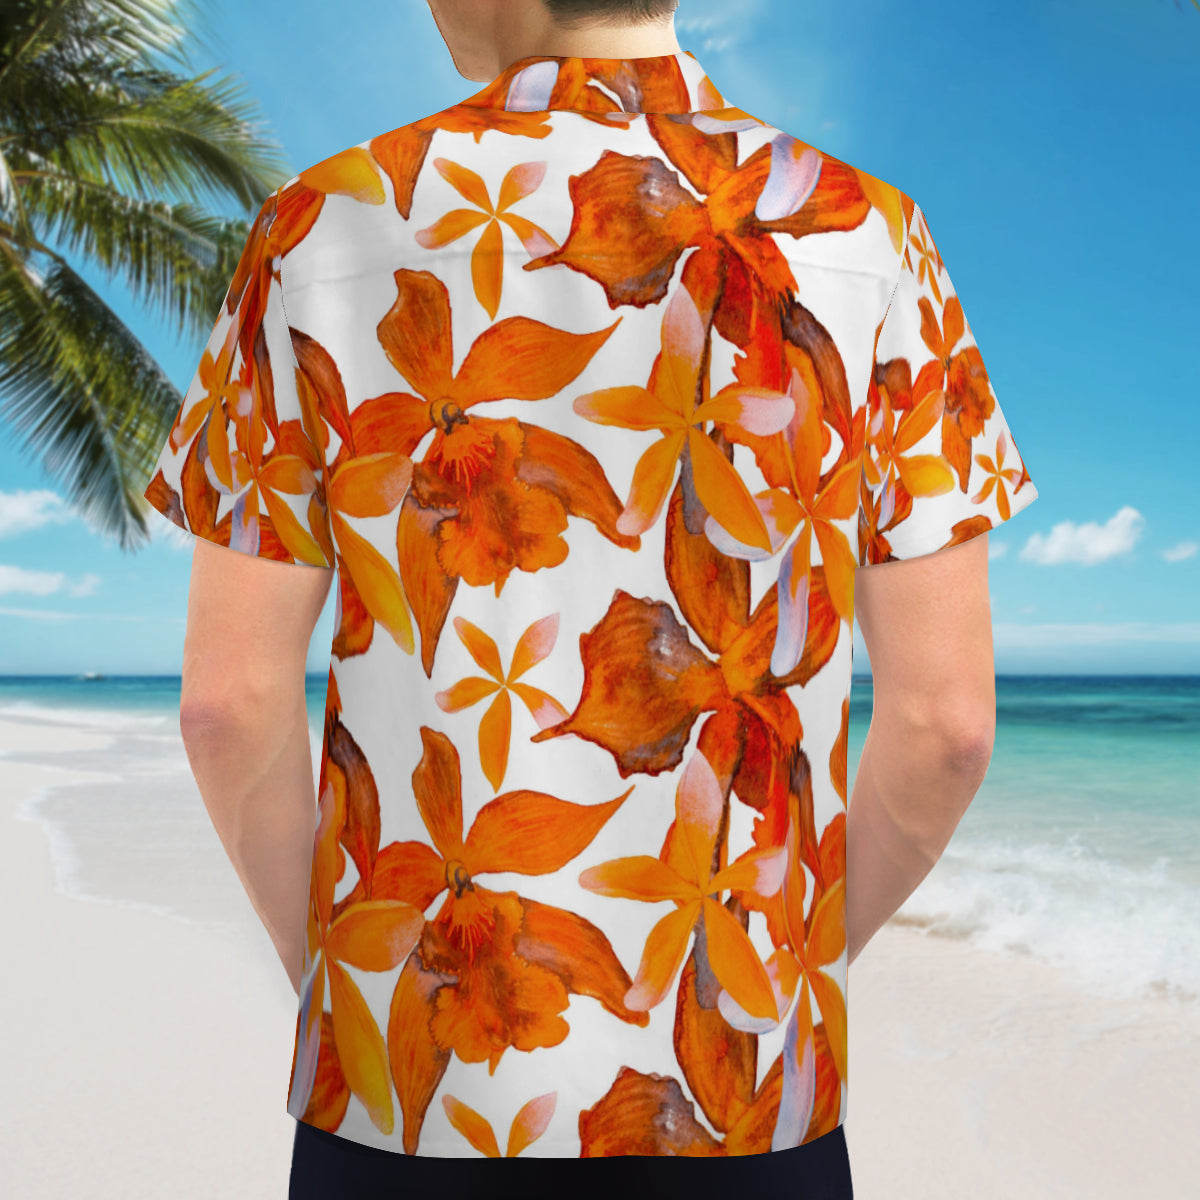 Hawaiian shirt - Orange and white flower design